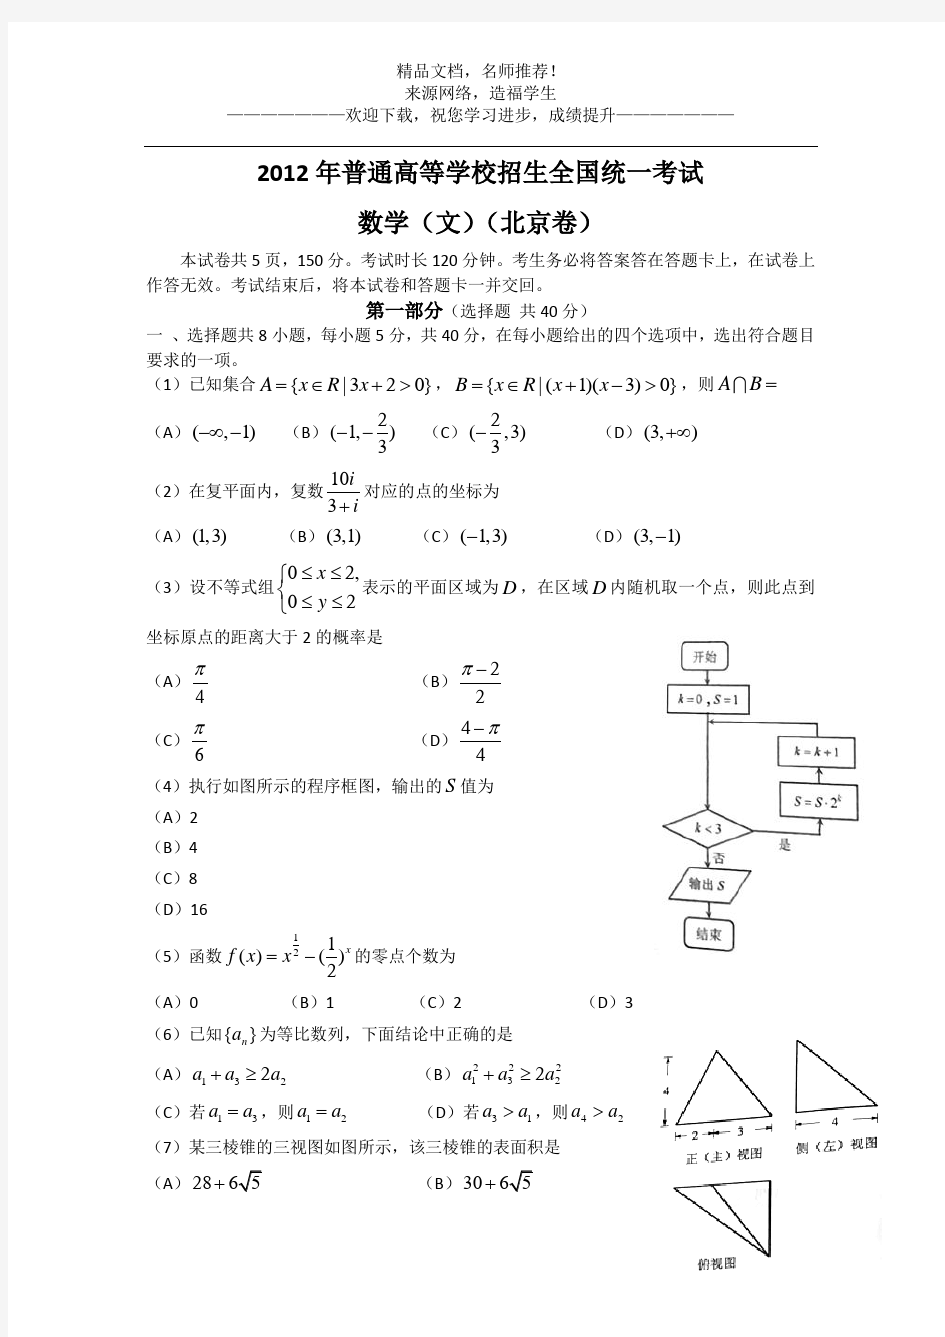 2012年高考真题——文科数学(北京卷)Word版含答案